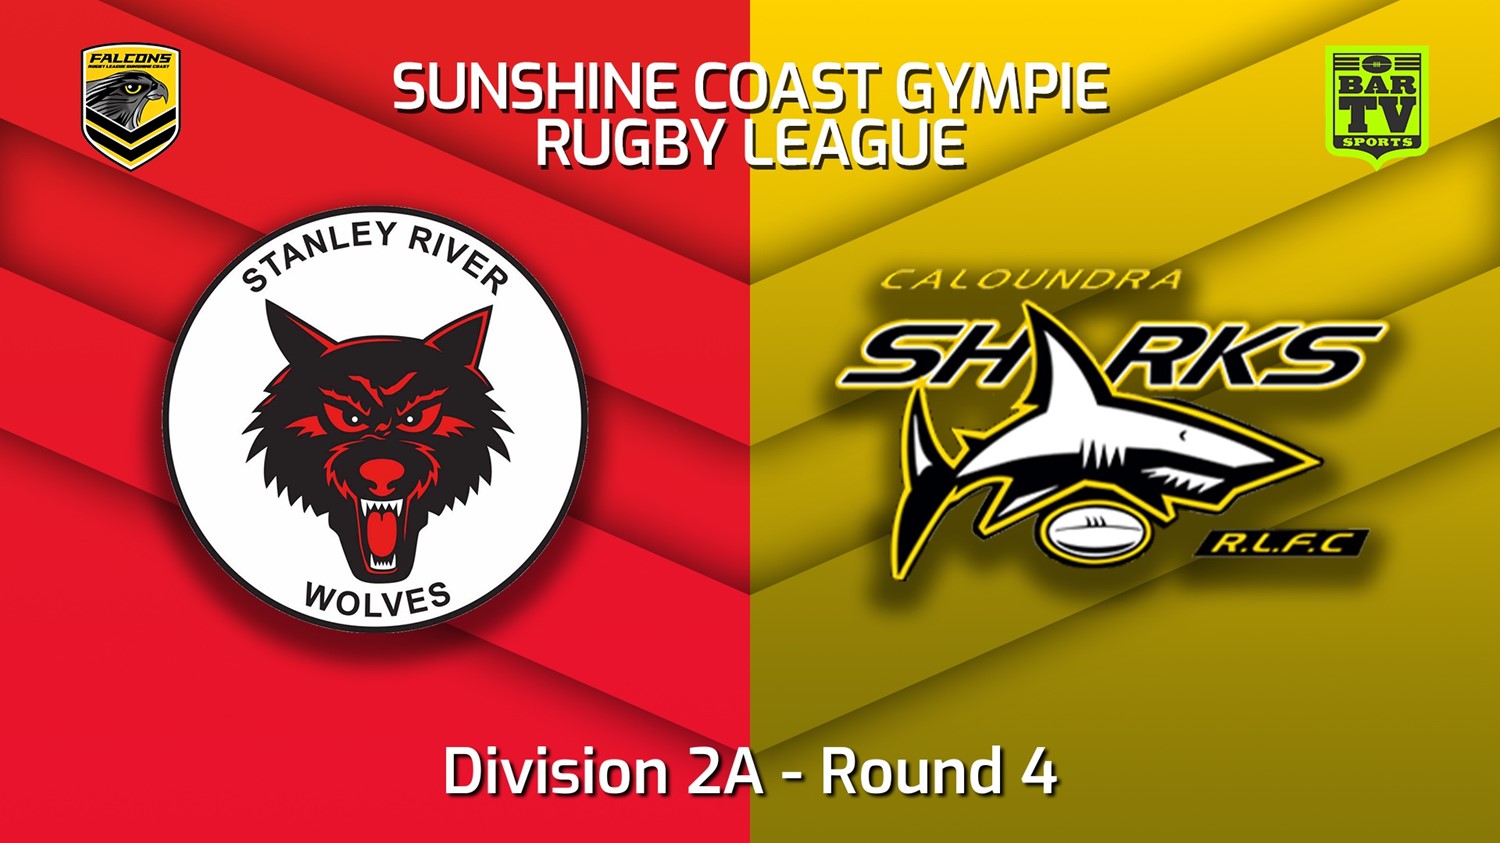 220507-Sunshine Coast RL Round 4 - Division 2A - Stanley River Wolves v Caloundra Sharks Slate Image